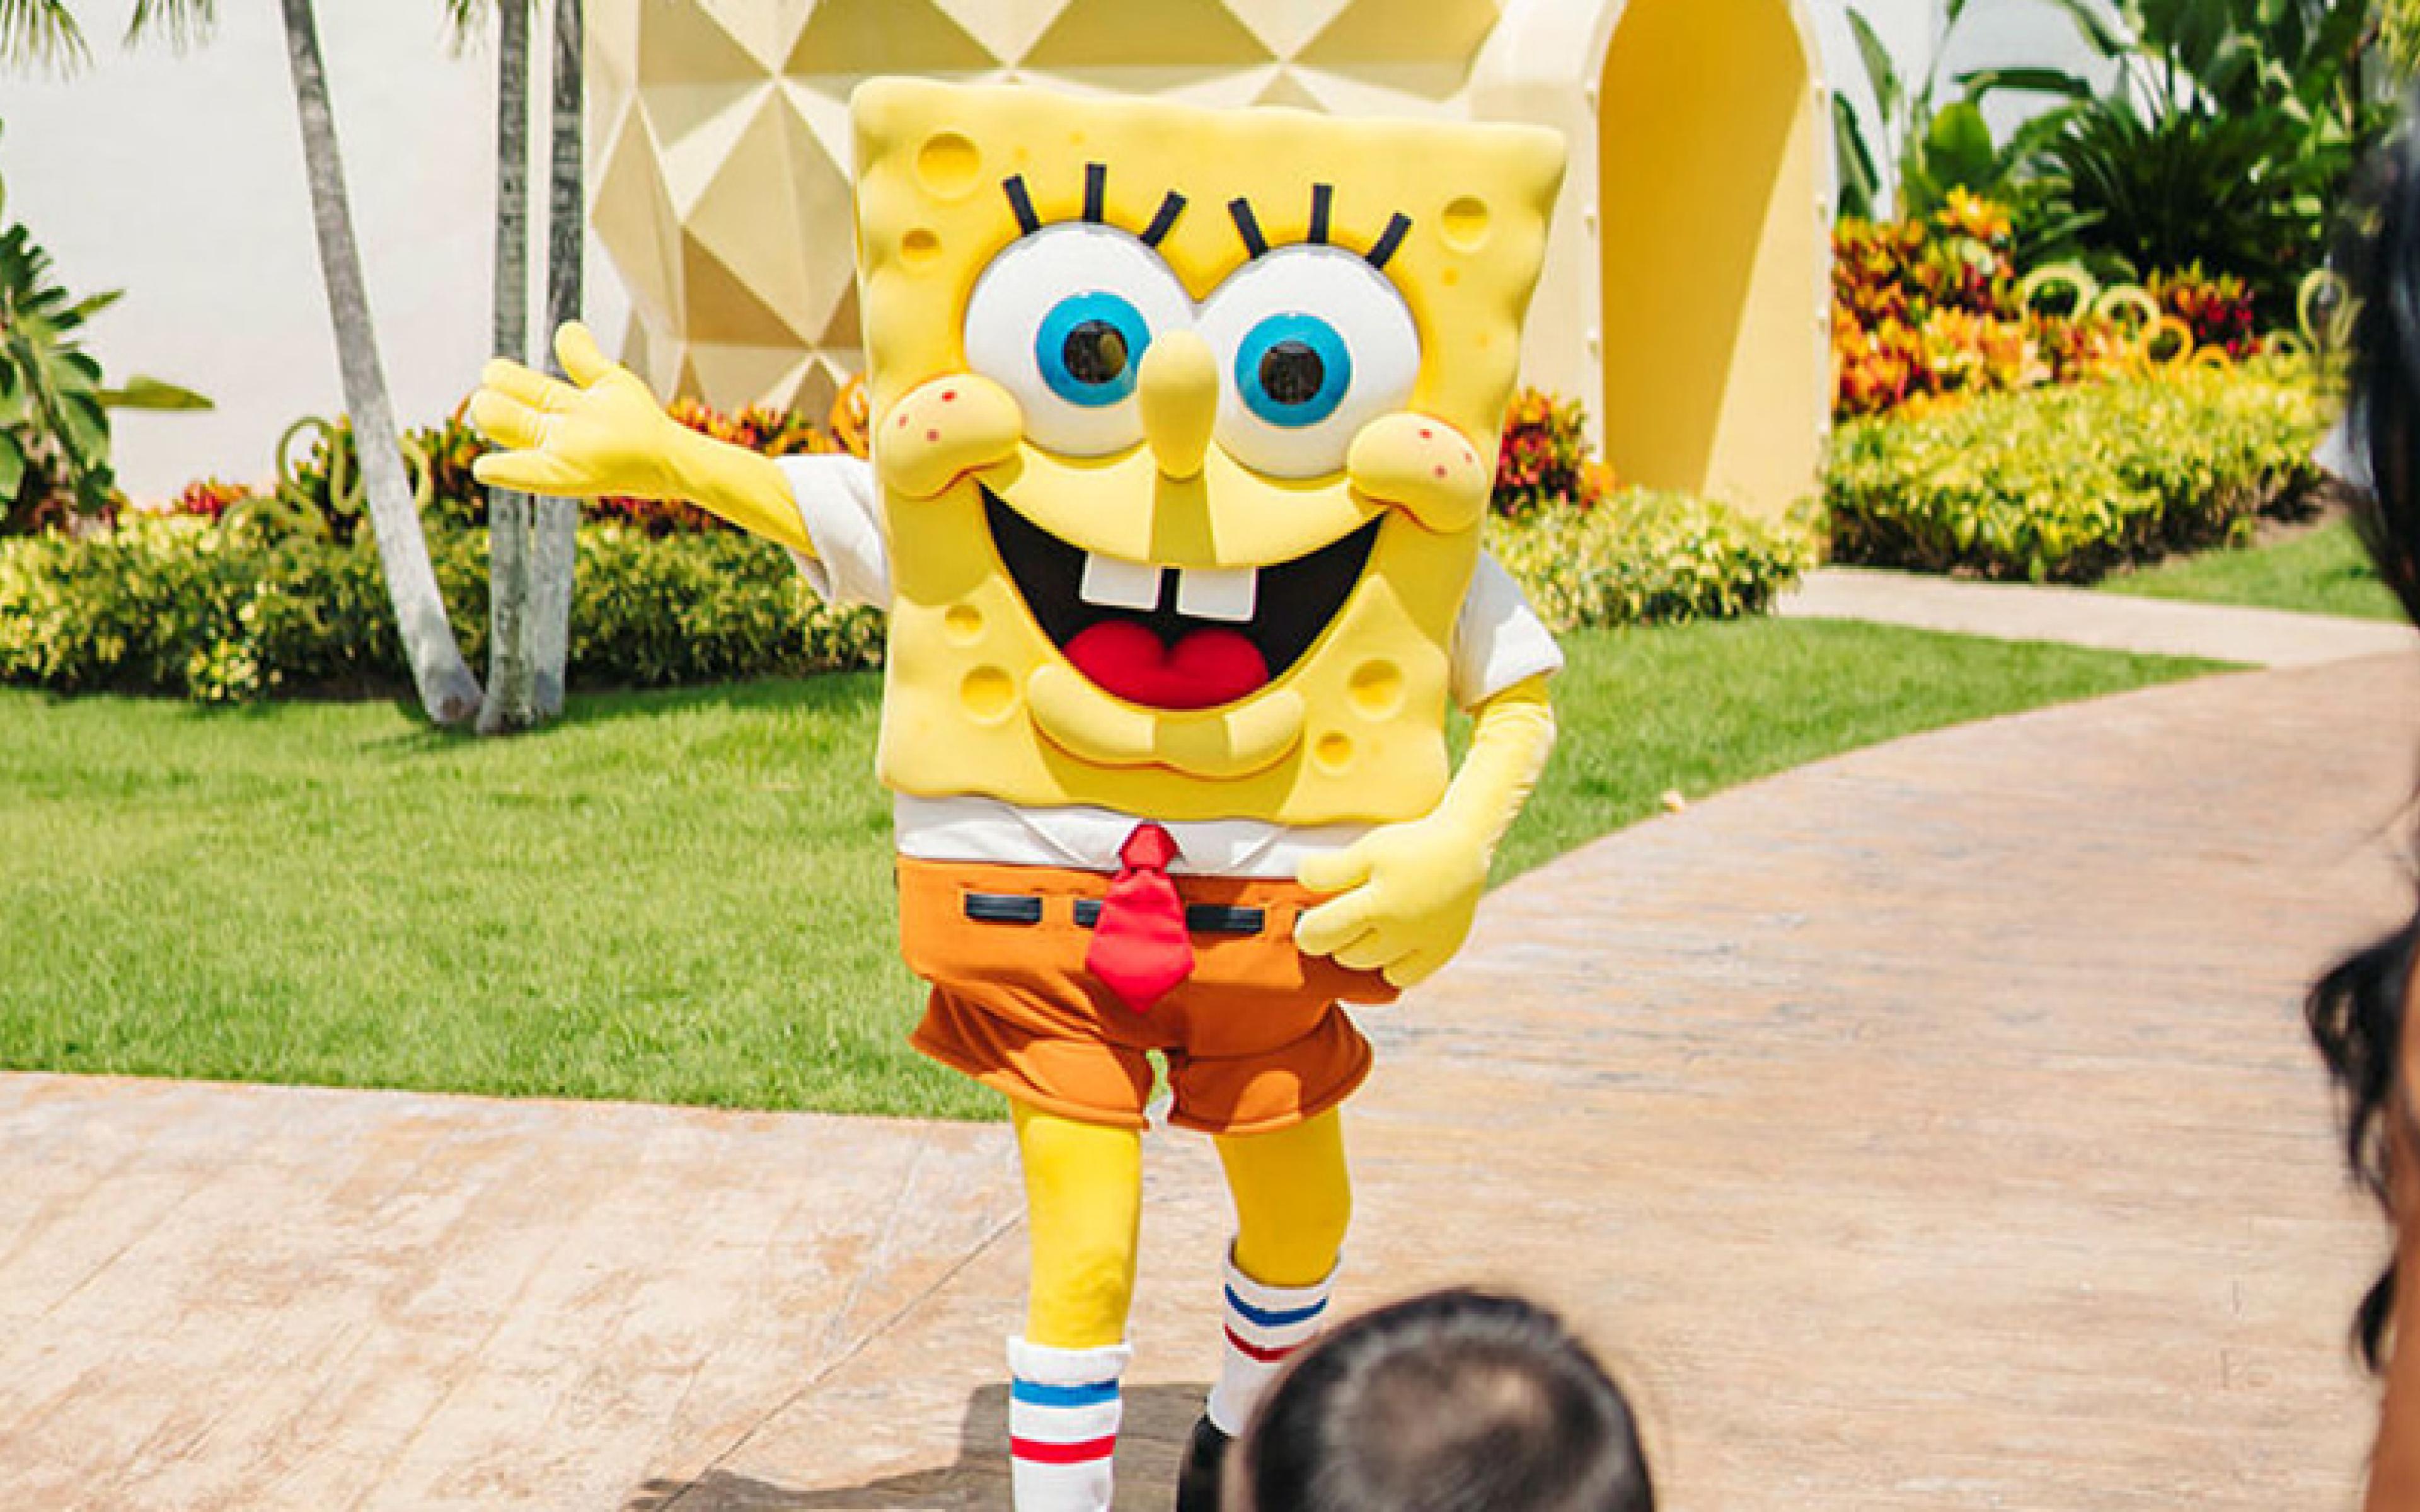 Sponge Bob waving